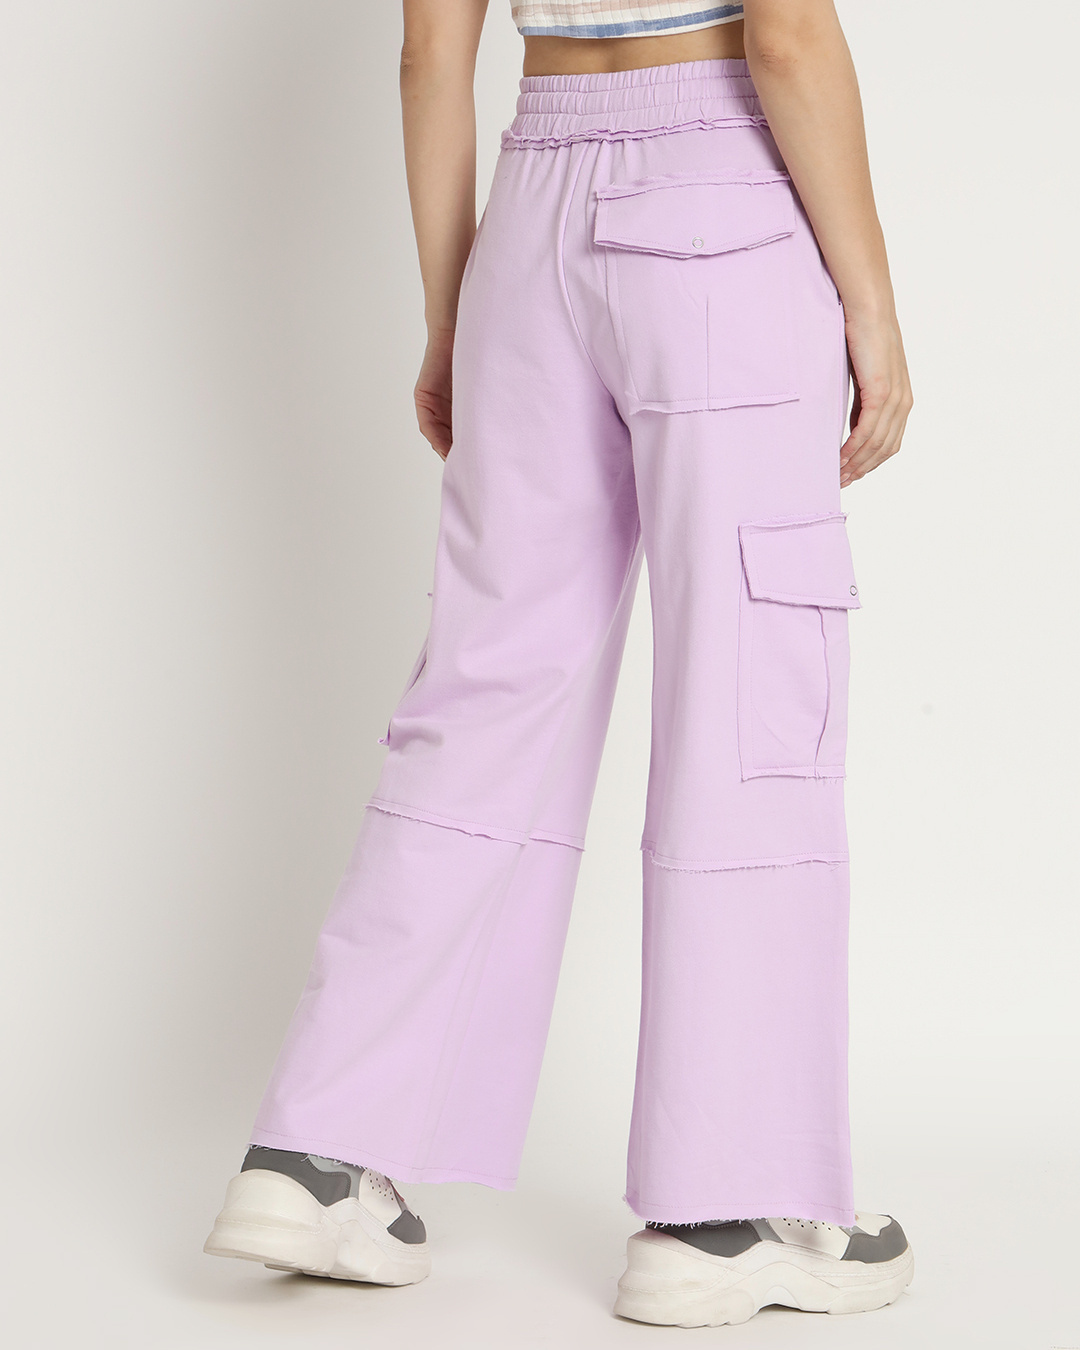 Buy Women's Purple Cargo Jeans Online at Bewakoof